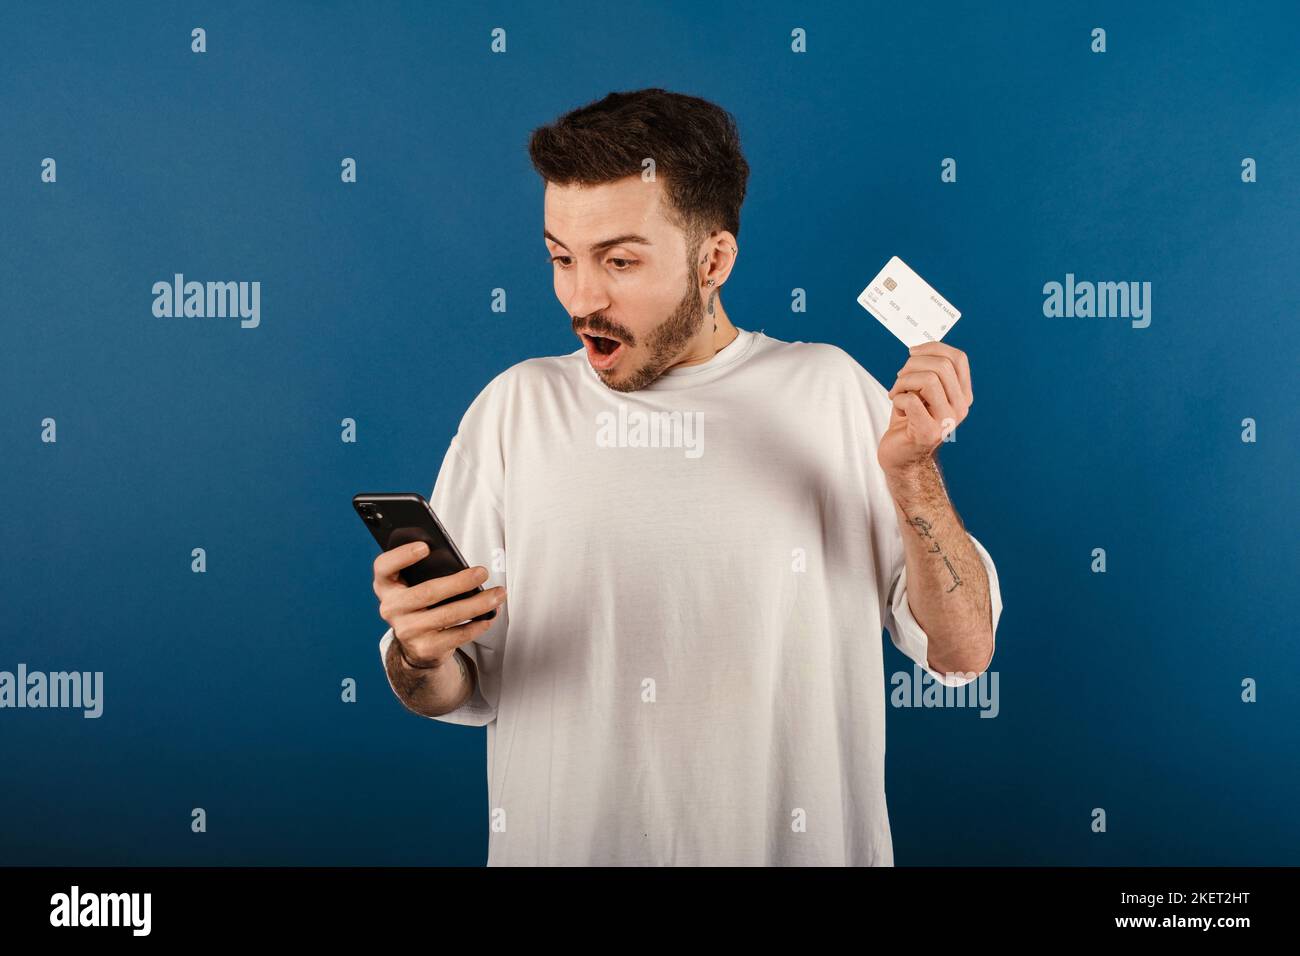 Portrait d'un homme joyeux portant un t-shirt blanc posant isolé sur fond bleu tenant un smartphone et une carte de crédit choqué de surprise et d'émerveiller Banque D'Images